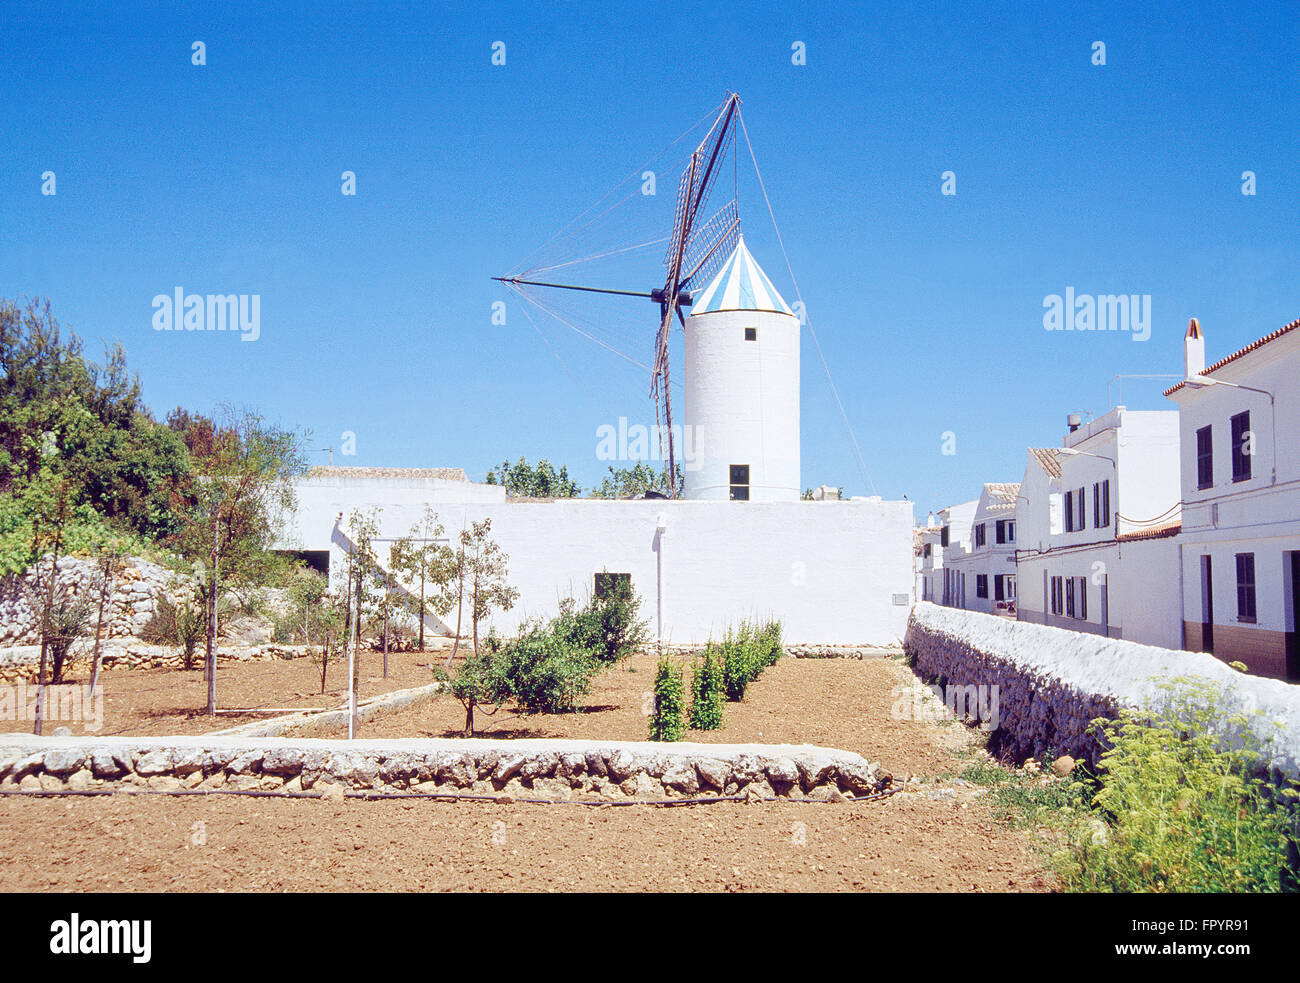 Gärtnerei und Windmühle. Ethnologisches Museum, Sant Lluis, Menorca Insel, Balearen, Spanien. Stockfoto